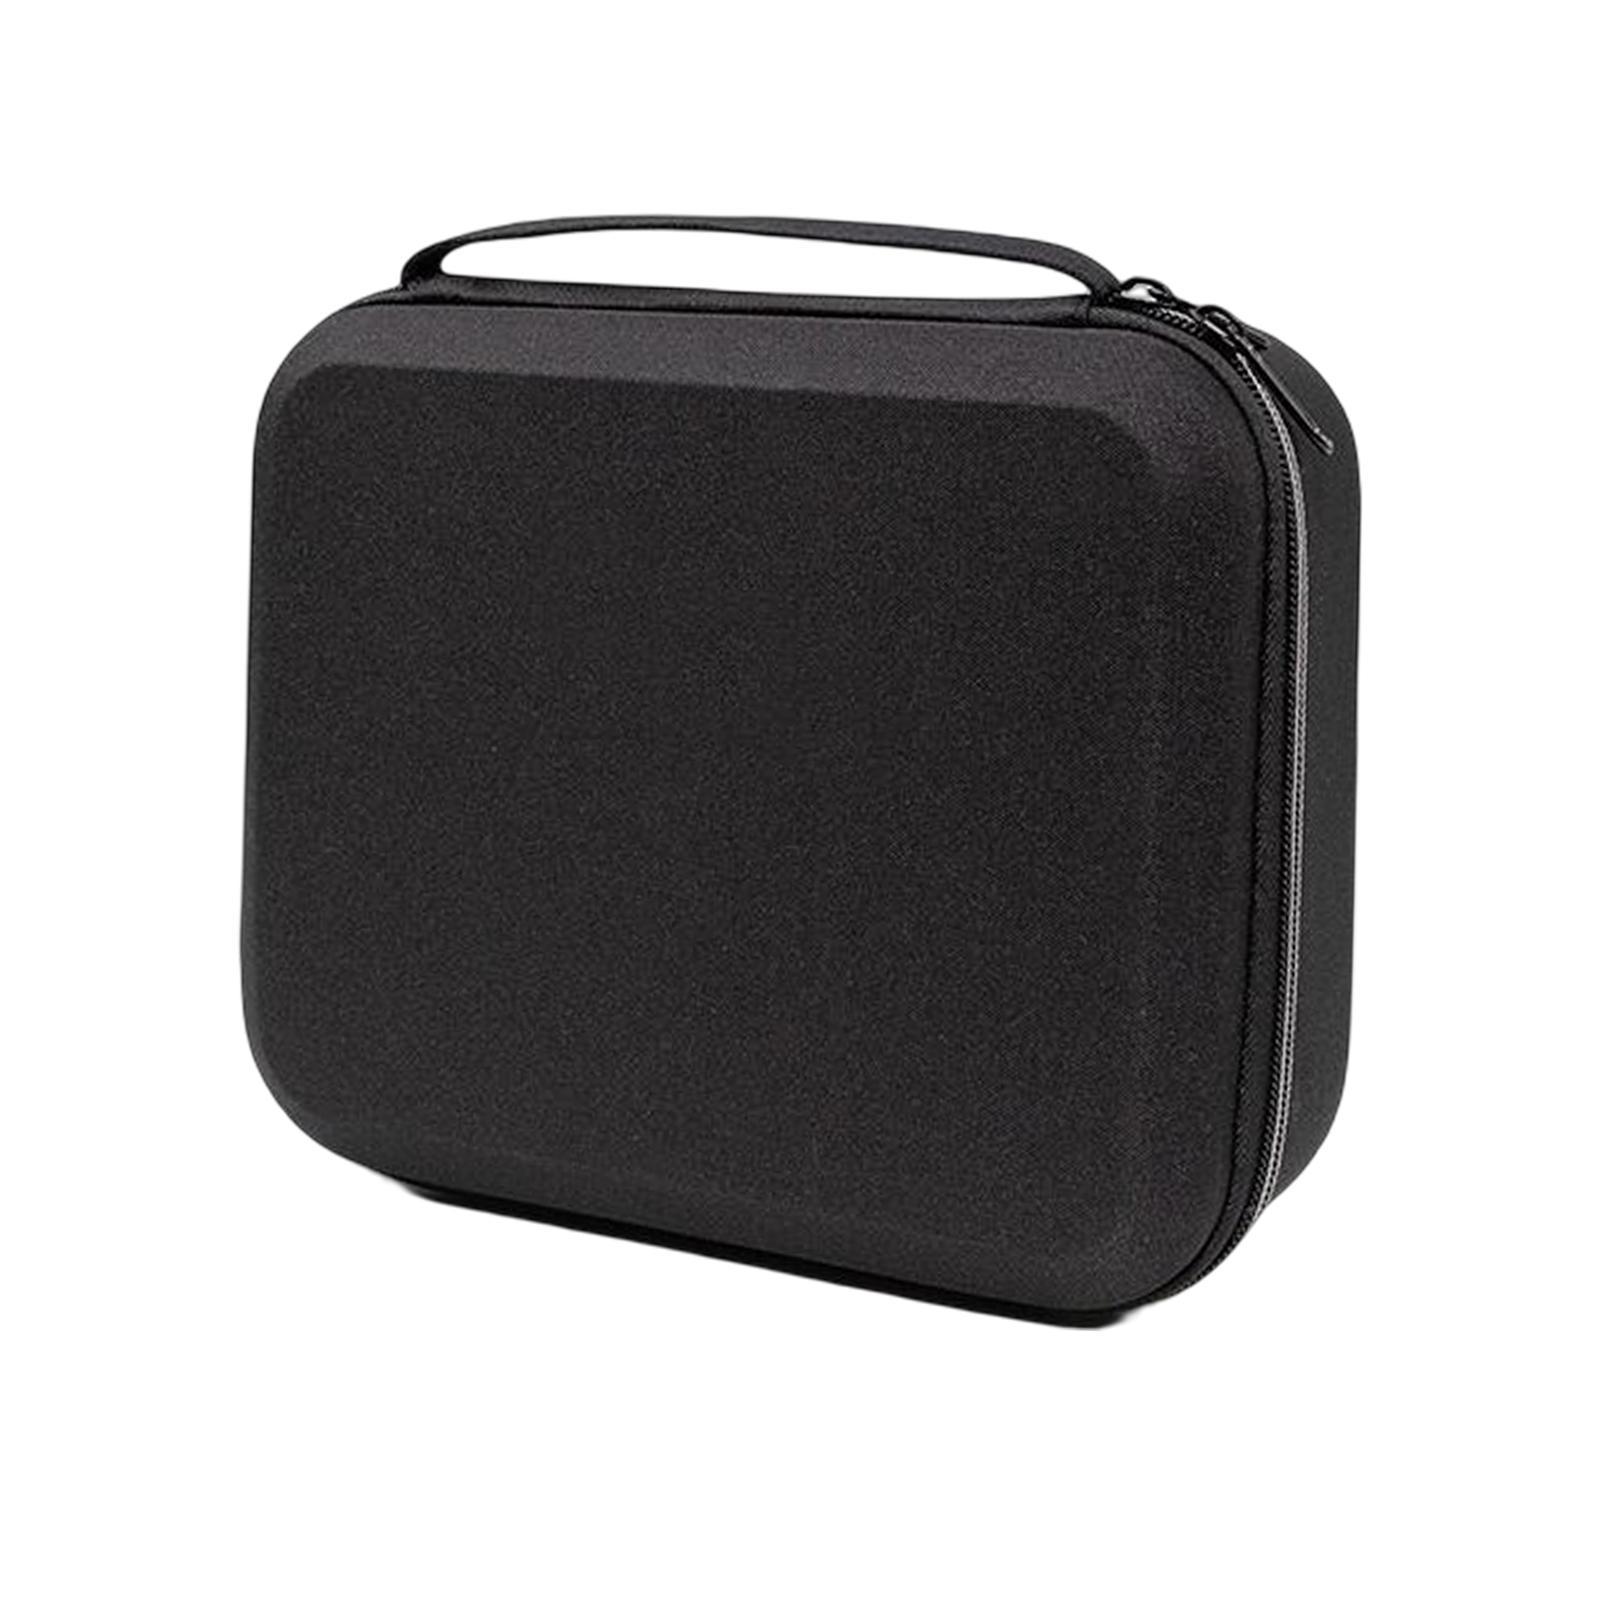 EVA Compact Camera Case Camera Case Bag for Digital Camera Travel Accs